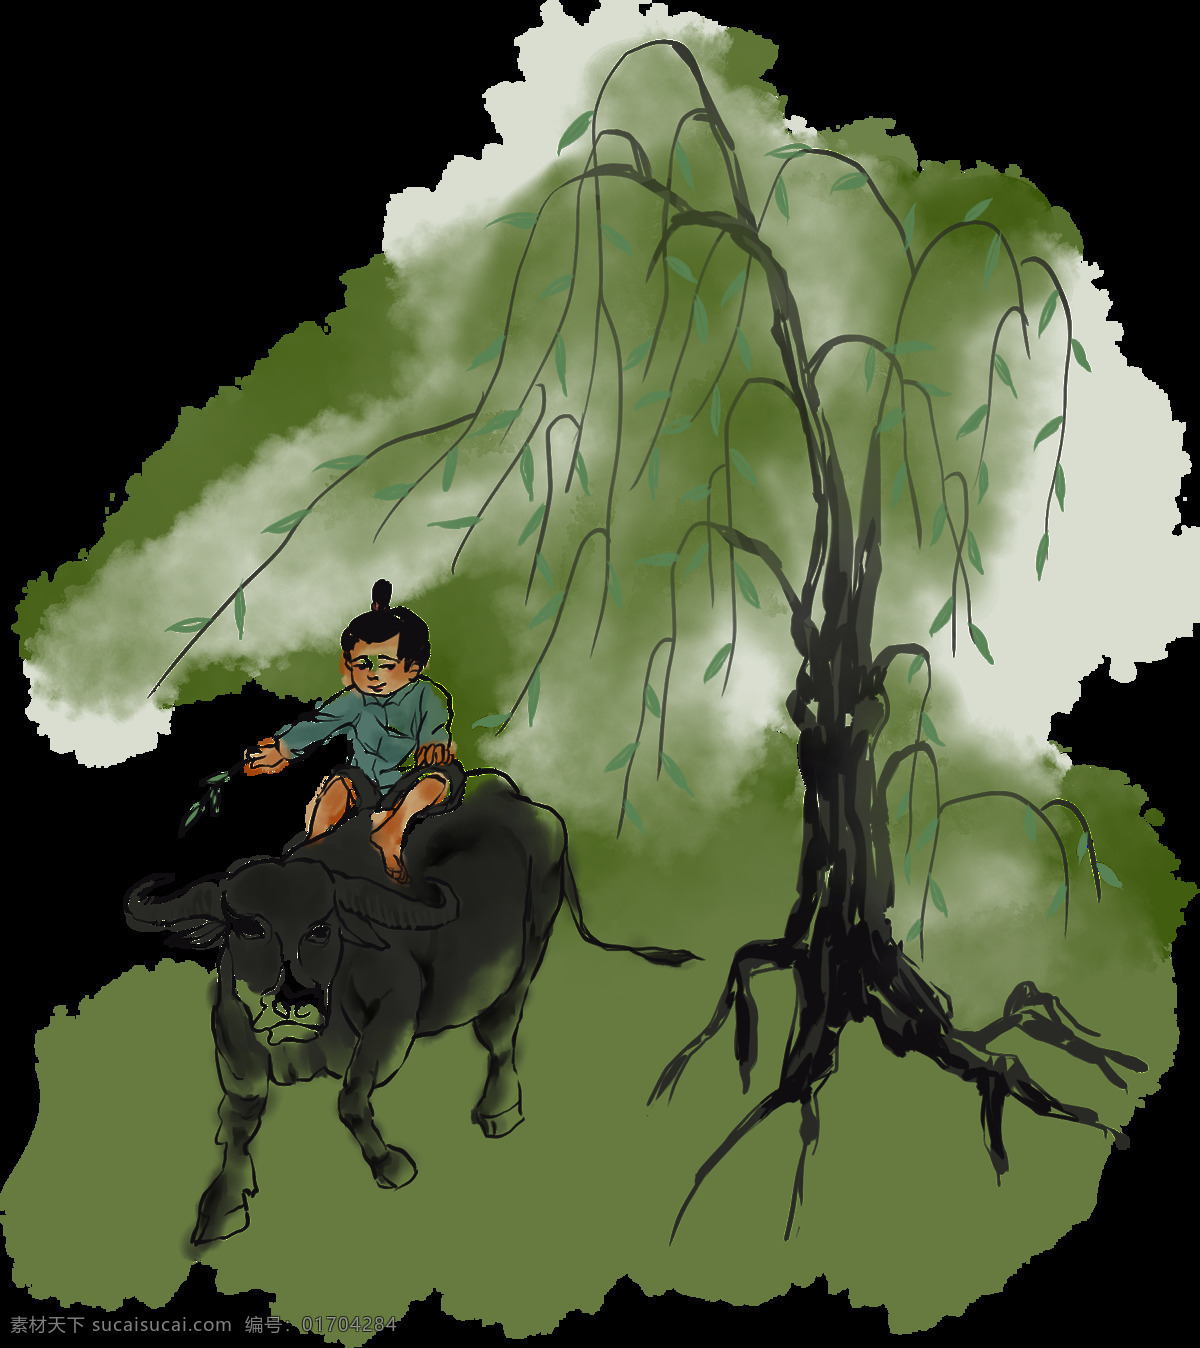 水墨插图图片 柳树 插图 小孩子 骑牛 水墨 插画